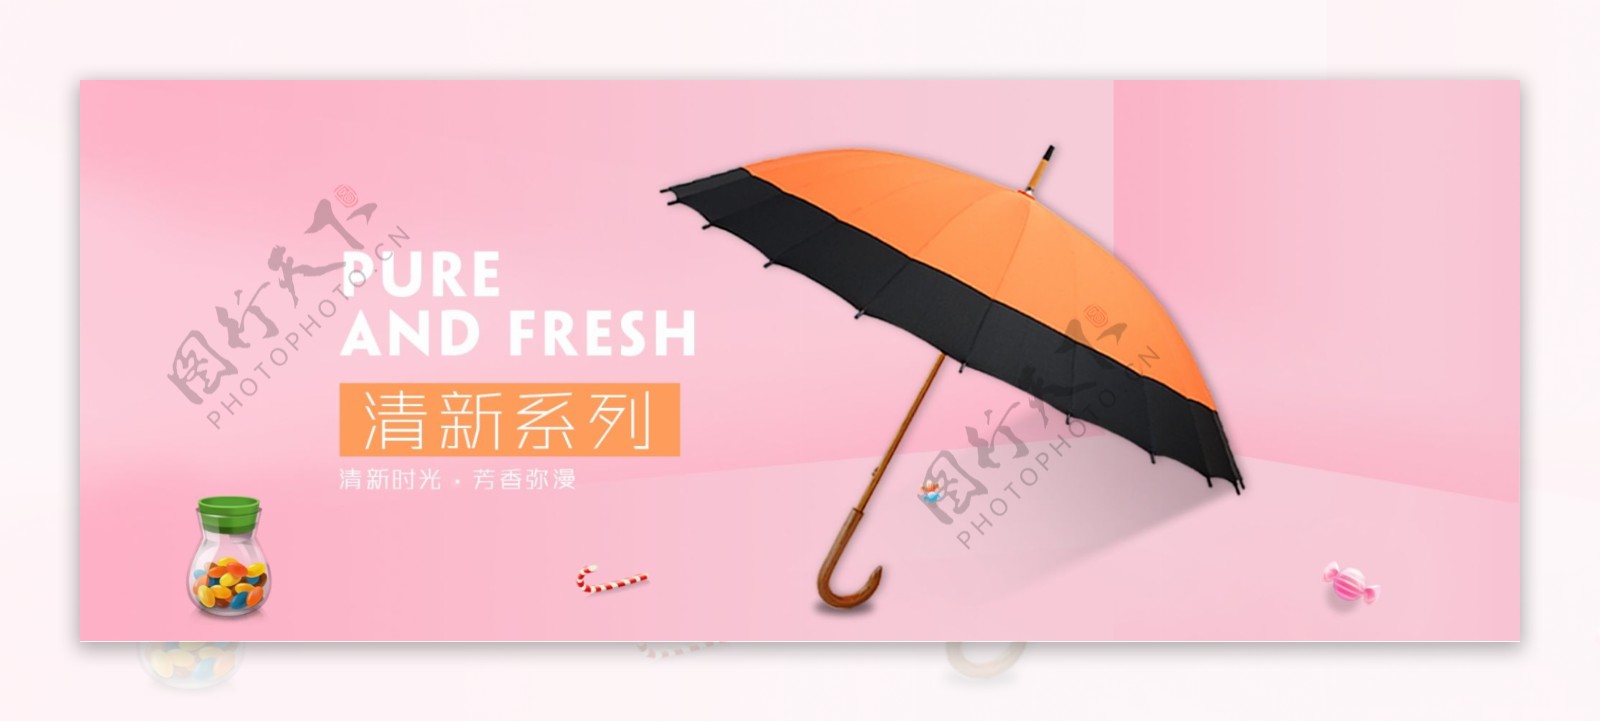 雨伞淘宝海报